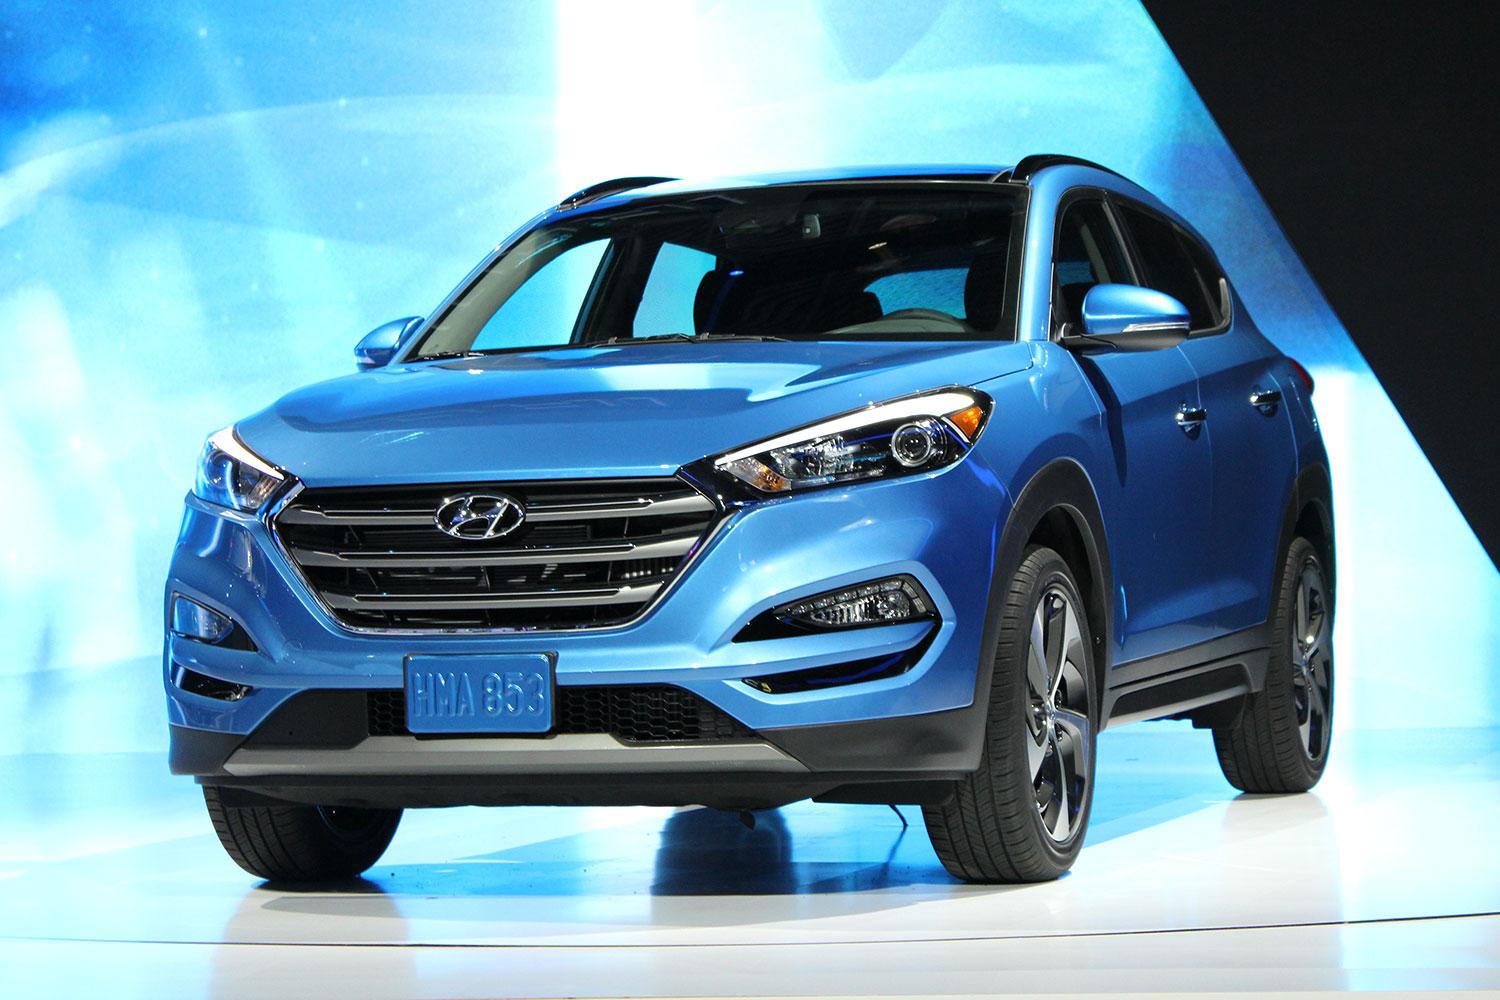 2016 Hyundai Tuscon front angle 2